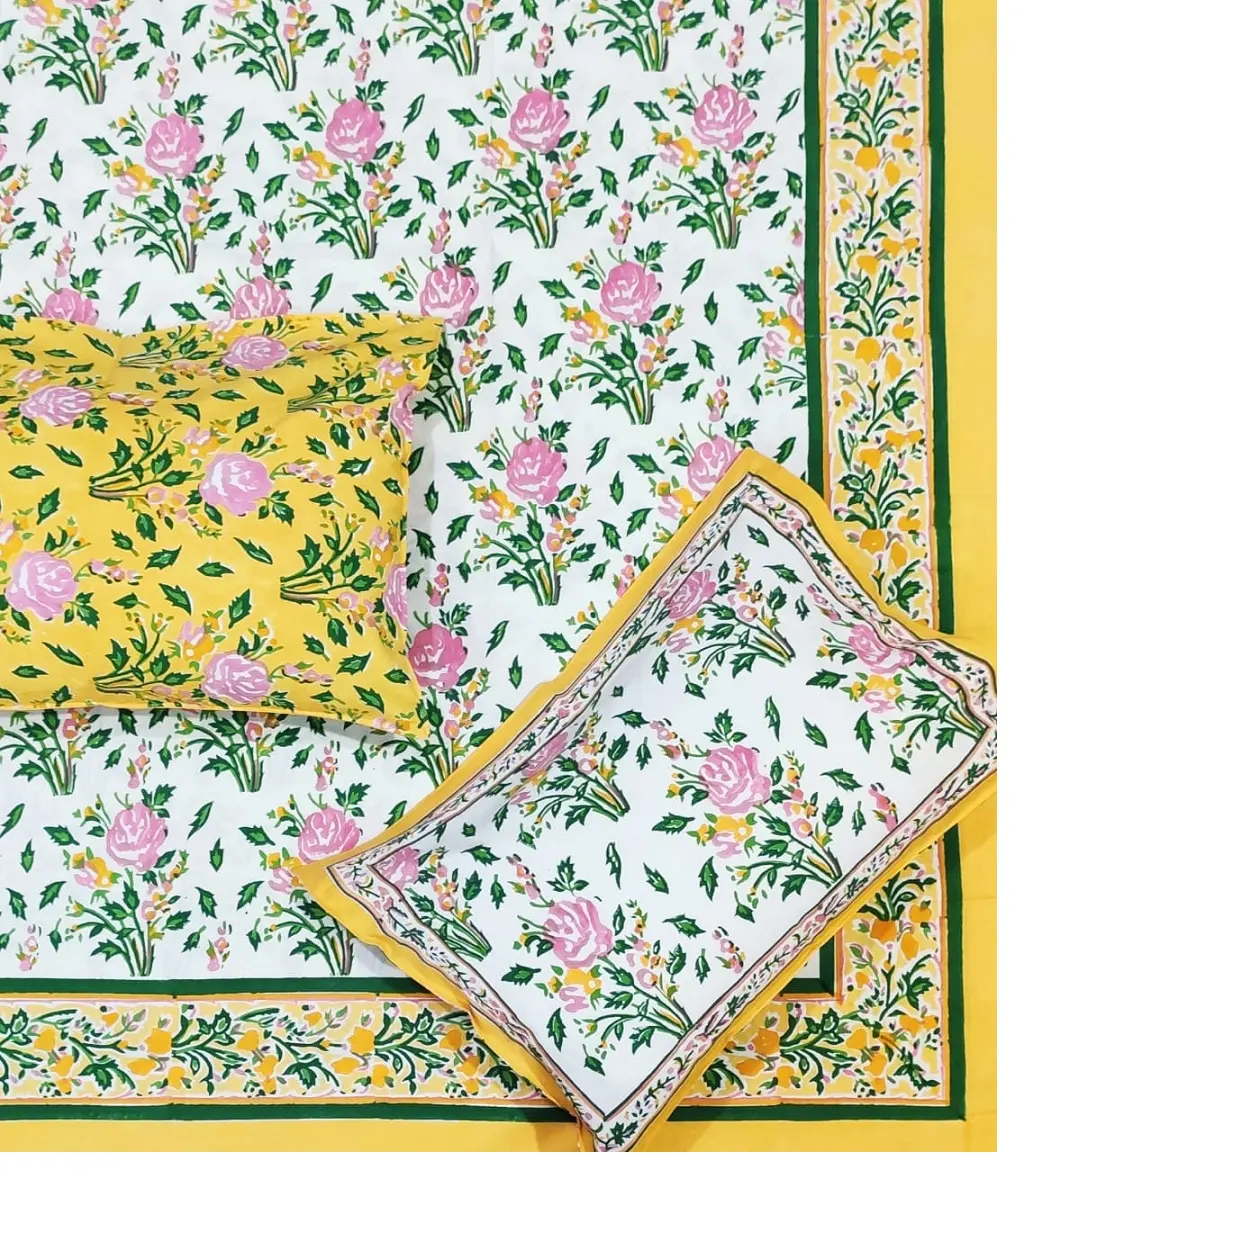 مفارش سرير قطن بنسبة 100% مصنعة حسب الطلب بأحجام مختلفة بتصميمات زهرية مع طباعة إطار ملون أصفر وألوان زاهية